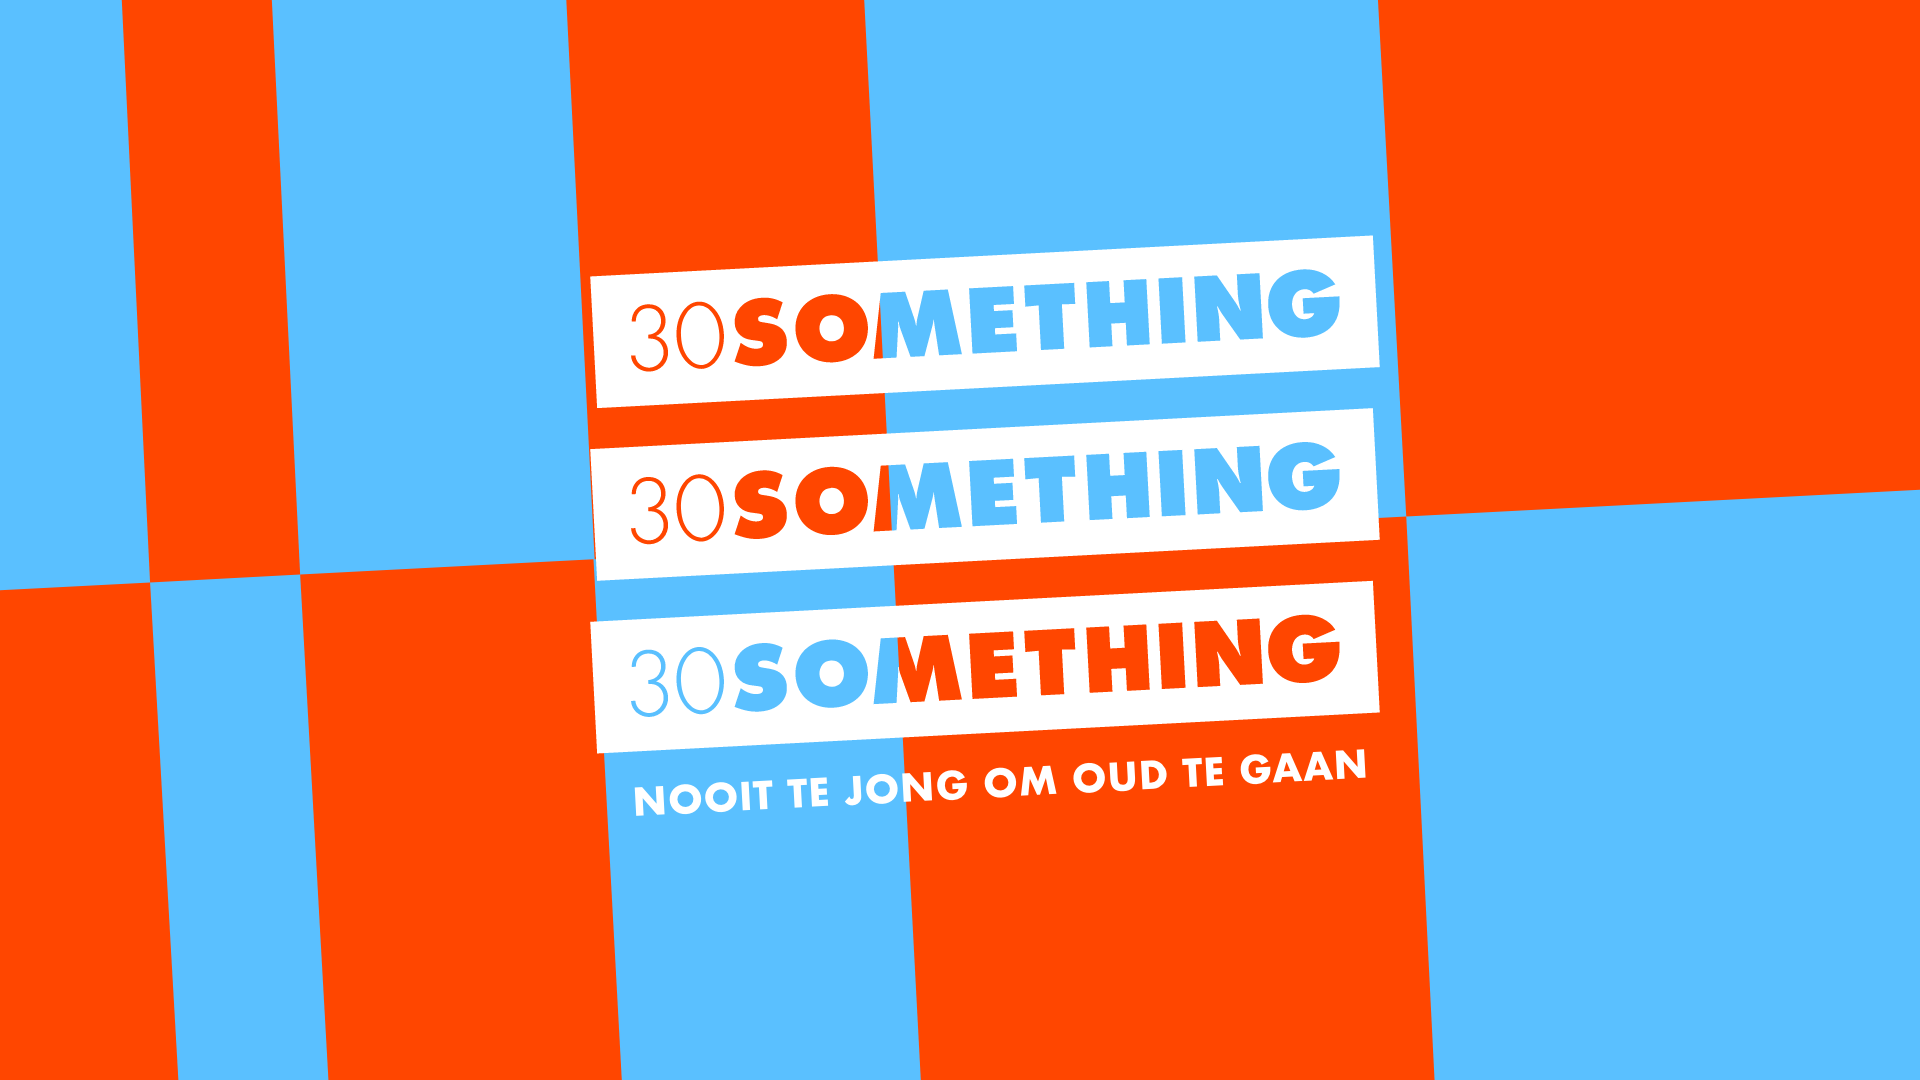 30 something - Página frontal